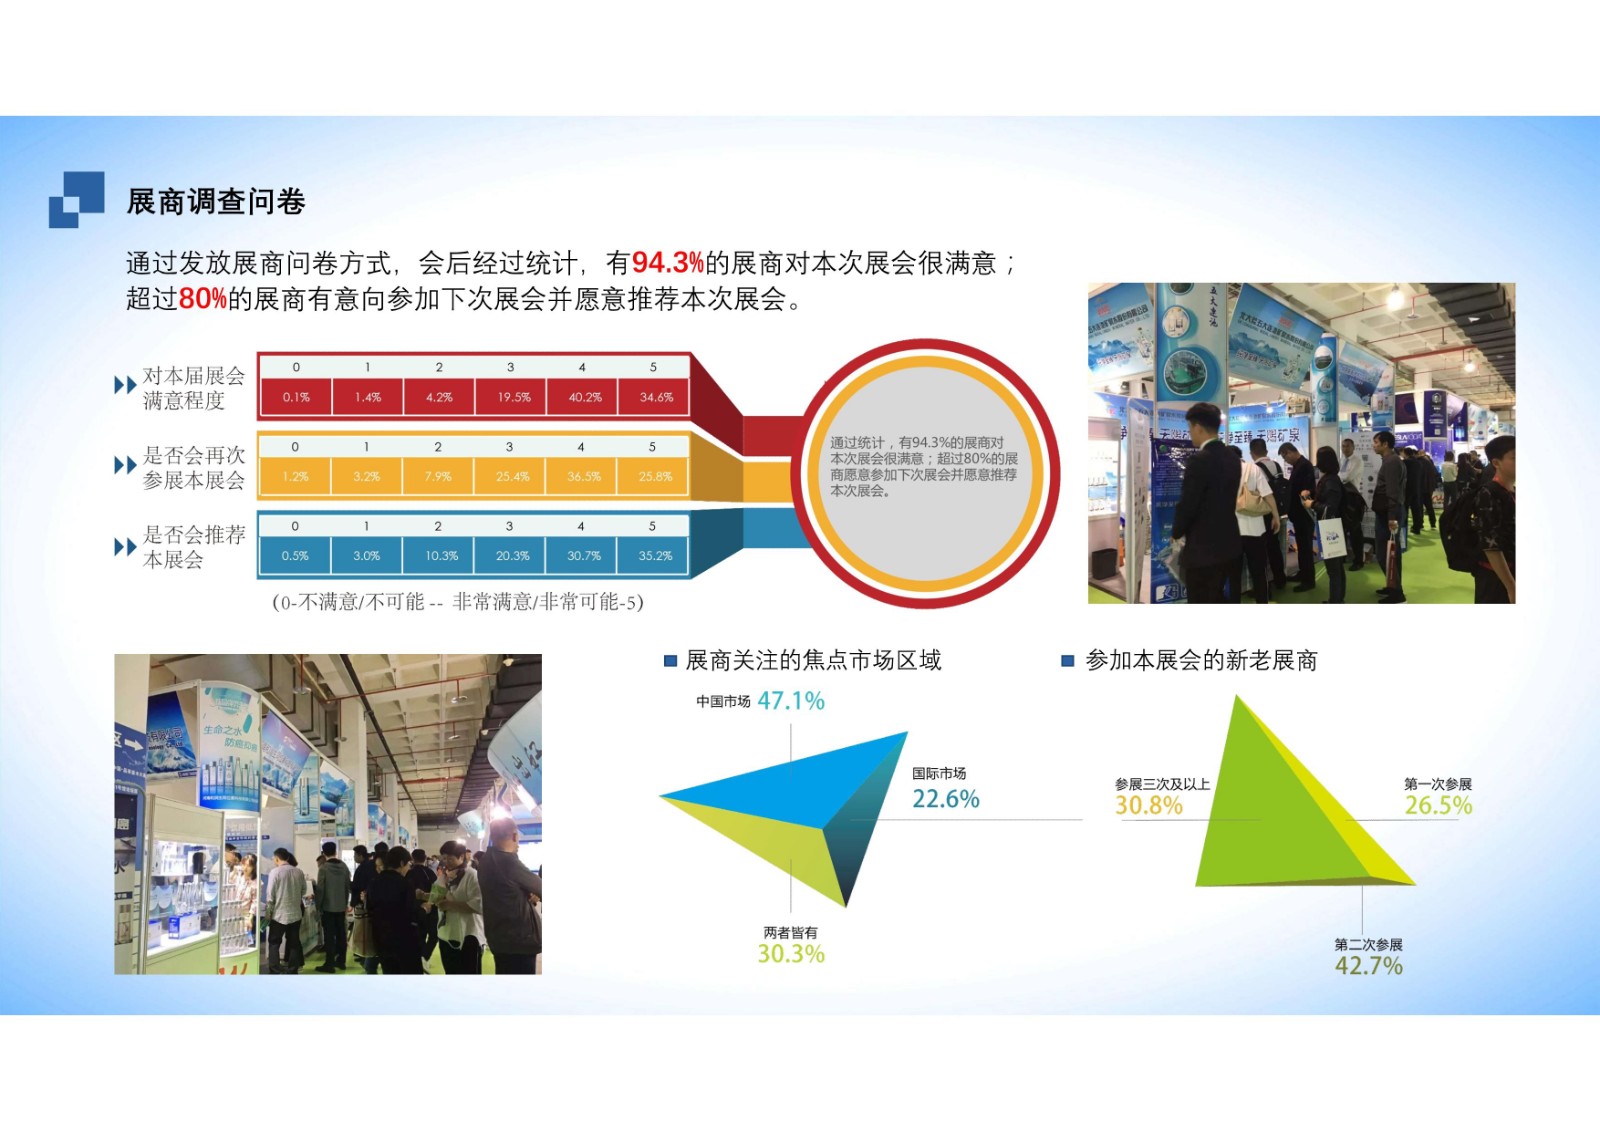 北京高端健康饮用水产业展览会